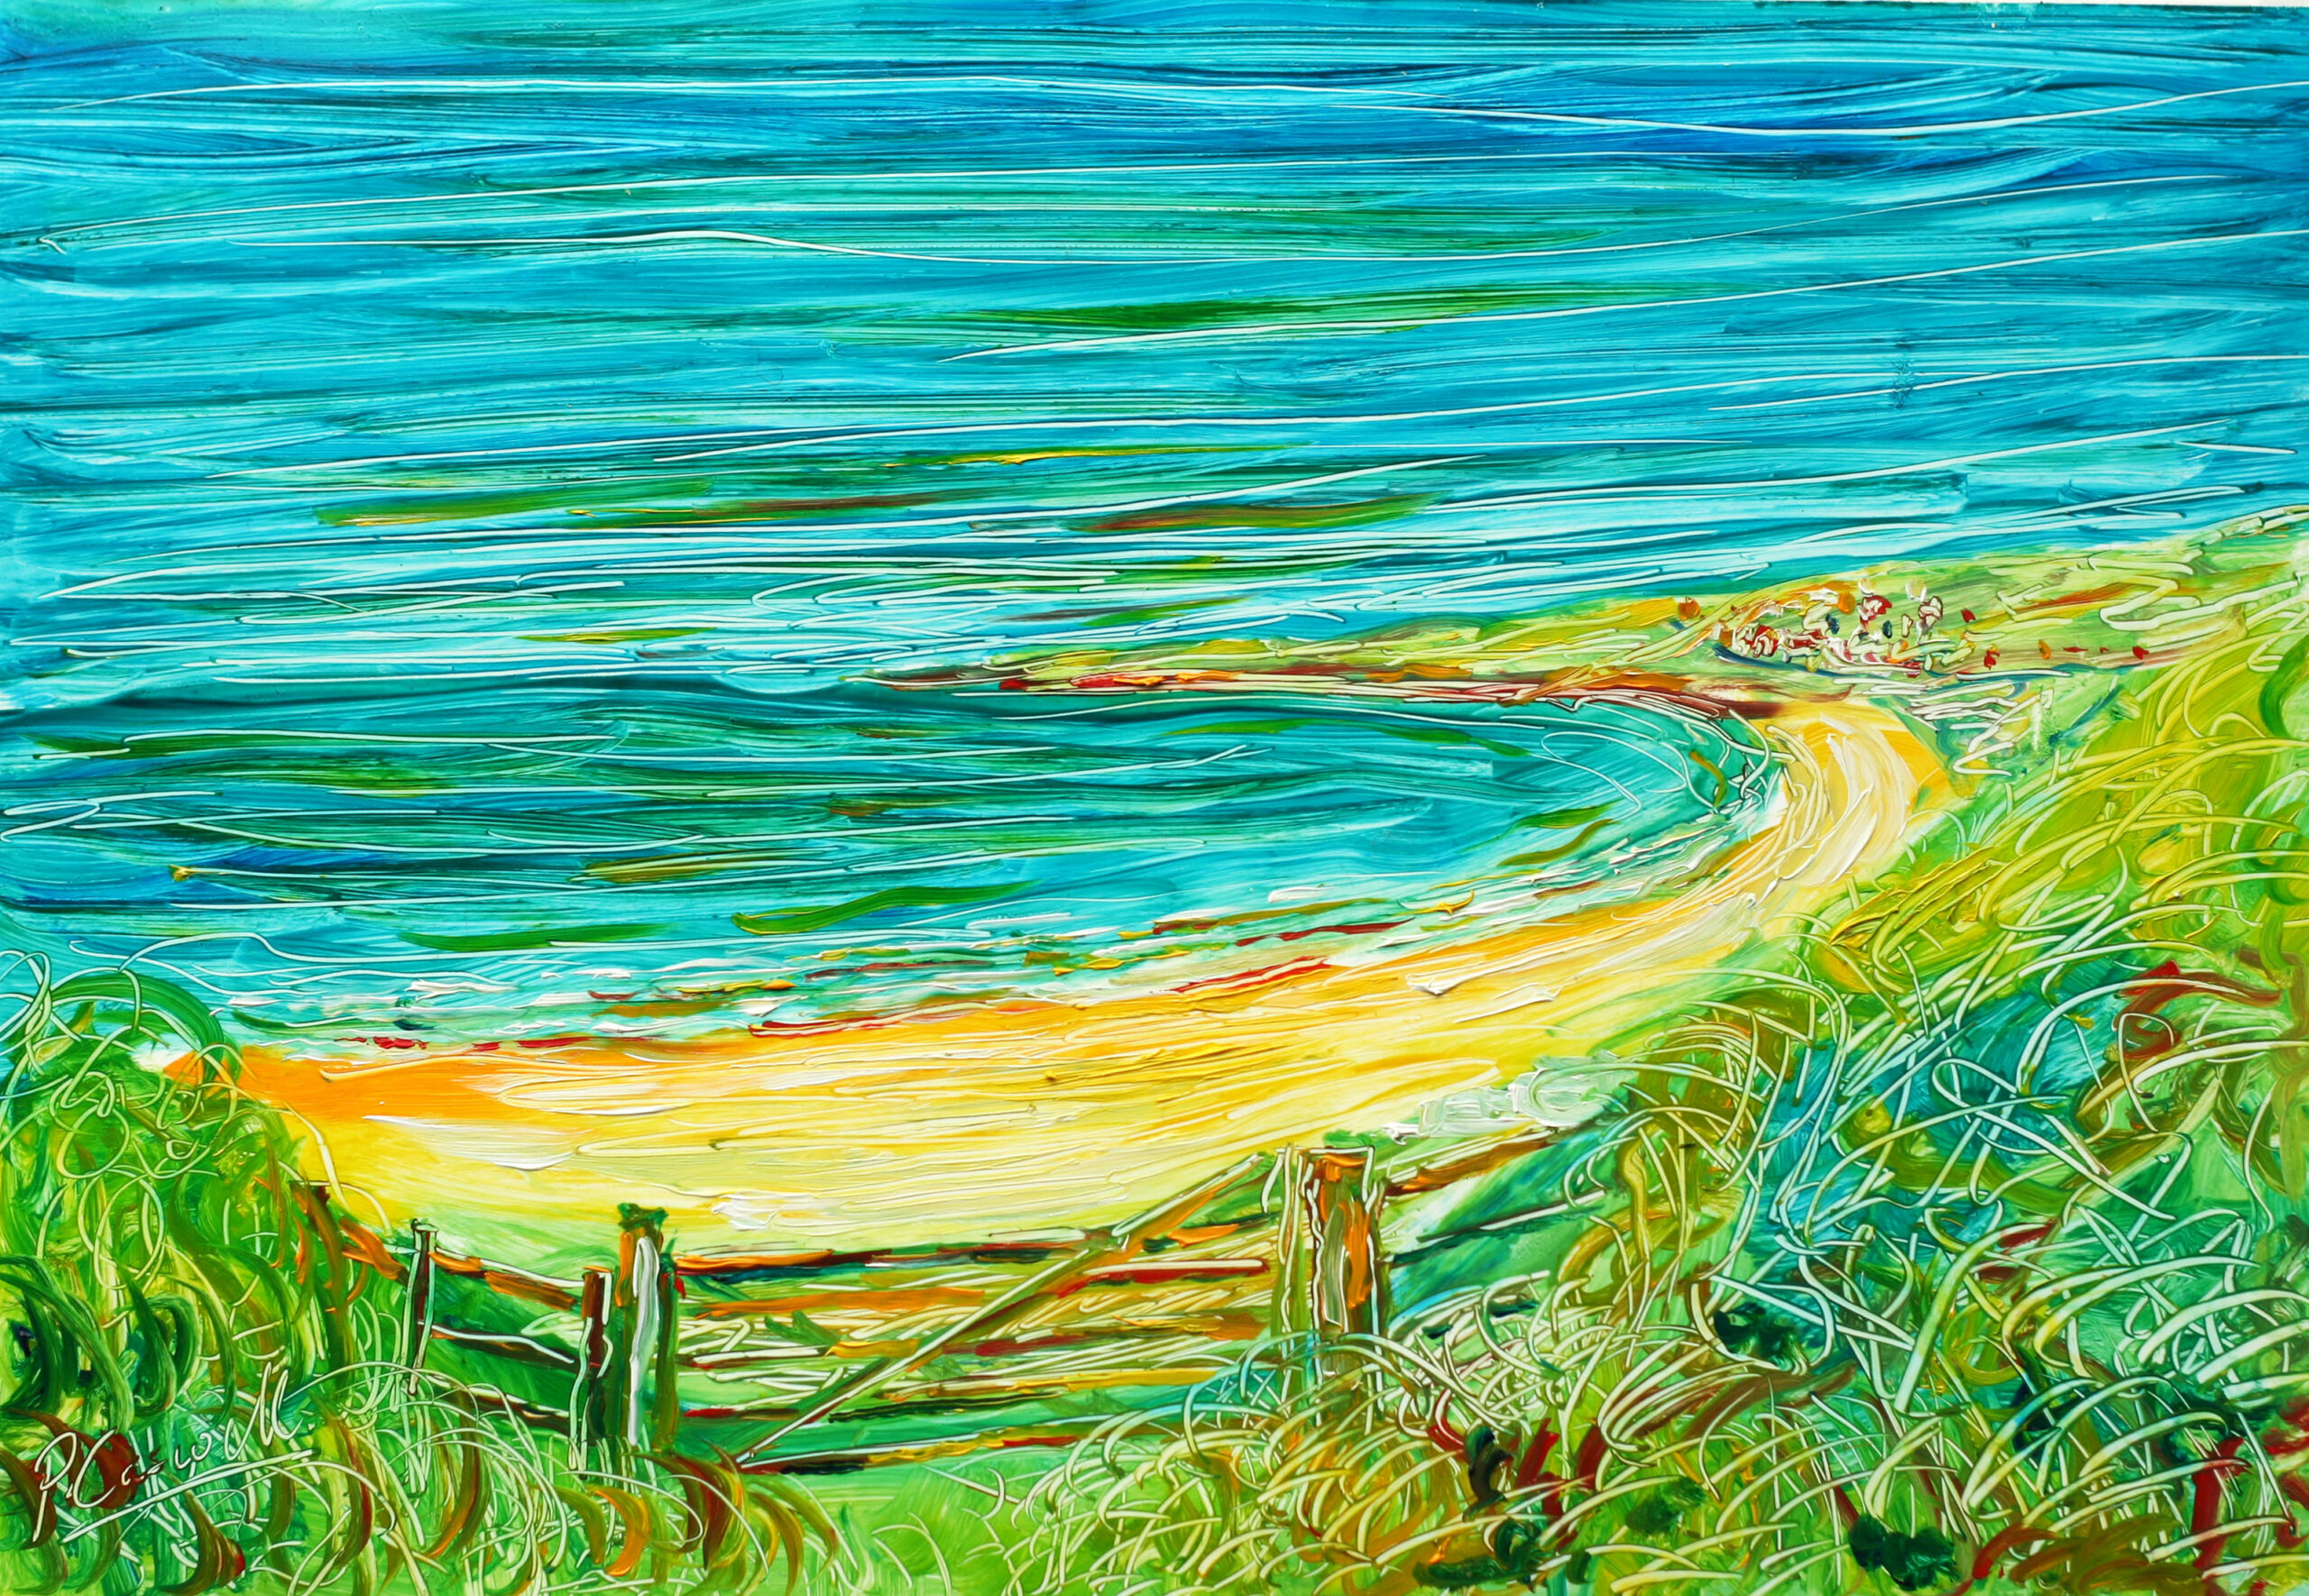 Putsborough Beach Painting